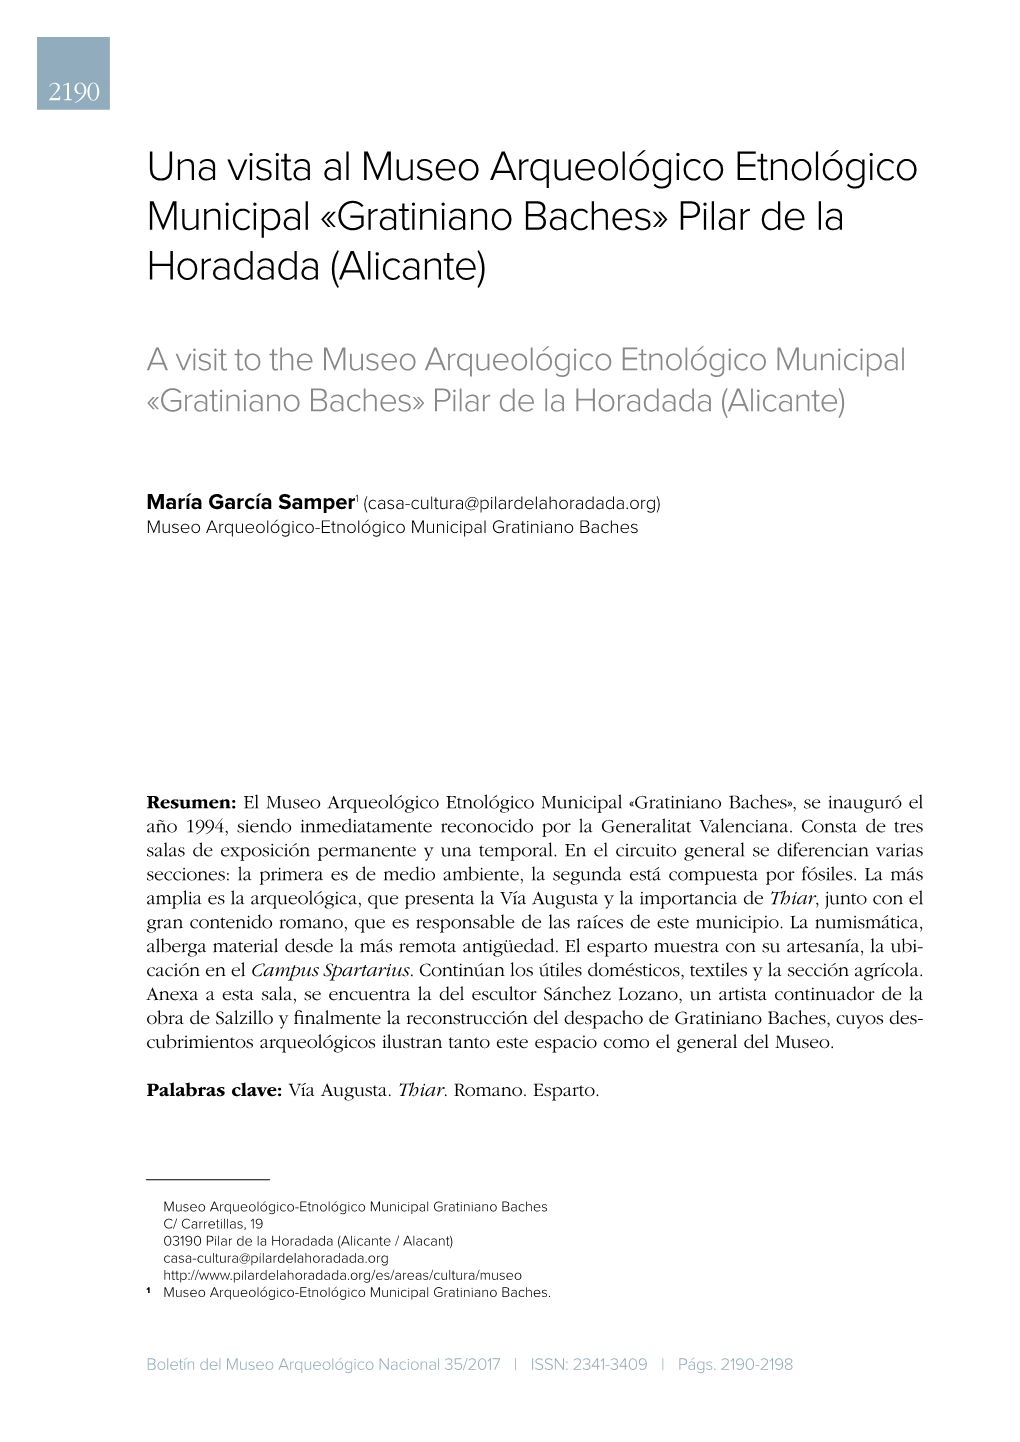 Gratiniano Baches» Pilar De La Horadada (Alicante)